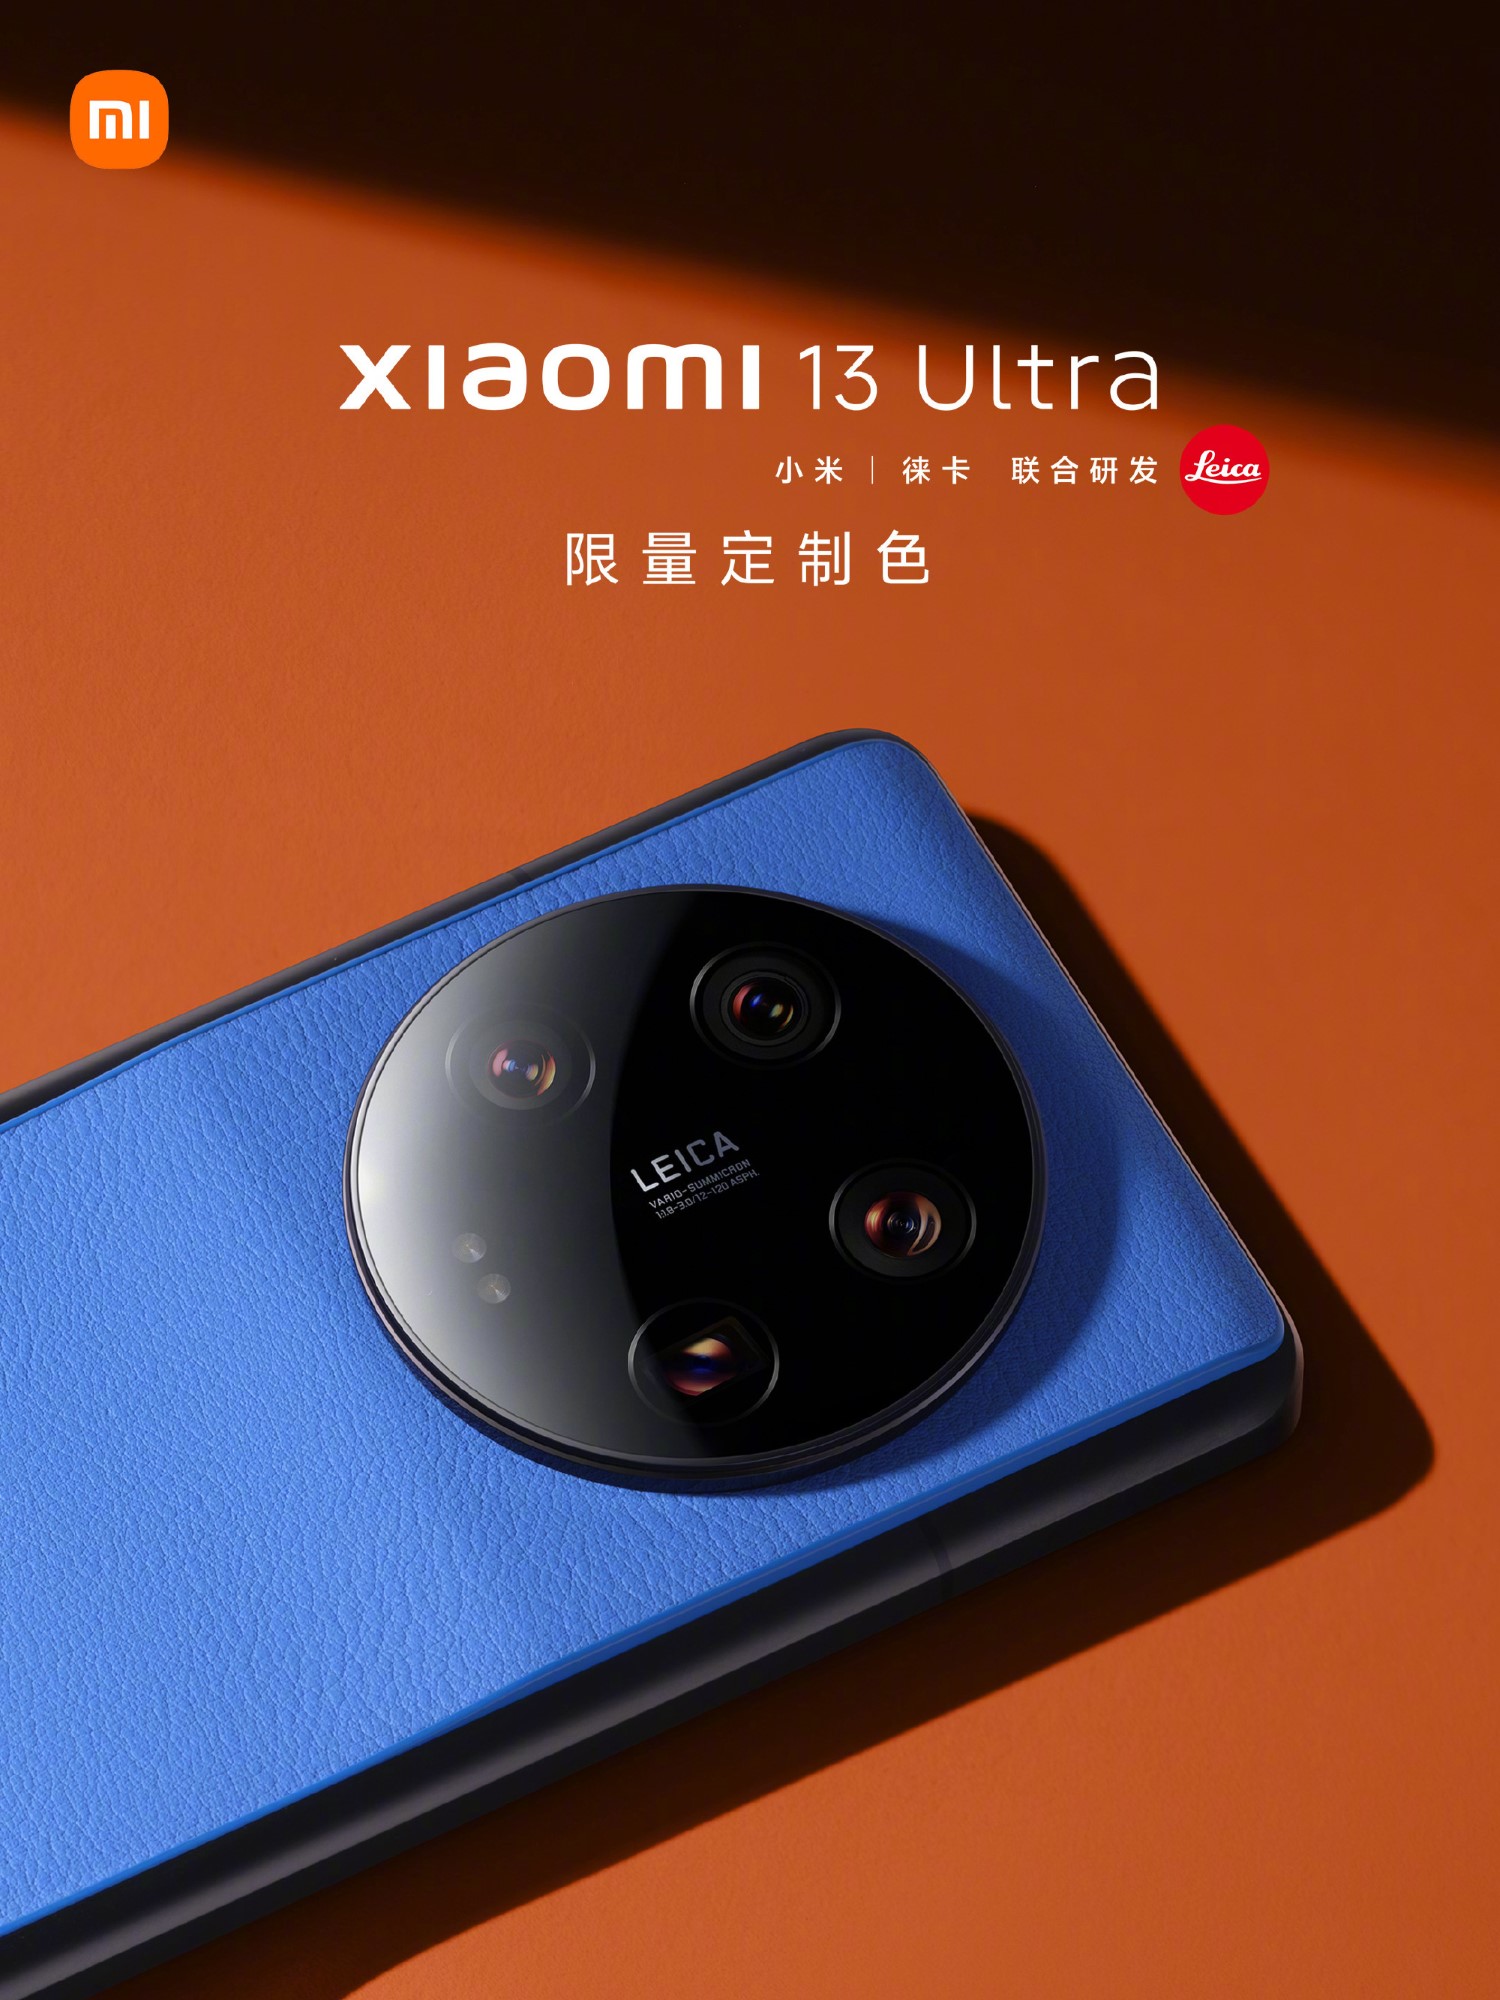 Xiaomi 13 ultra в москве